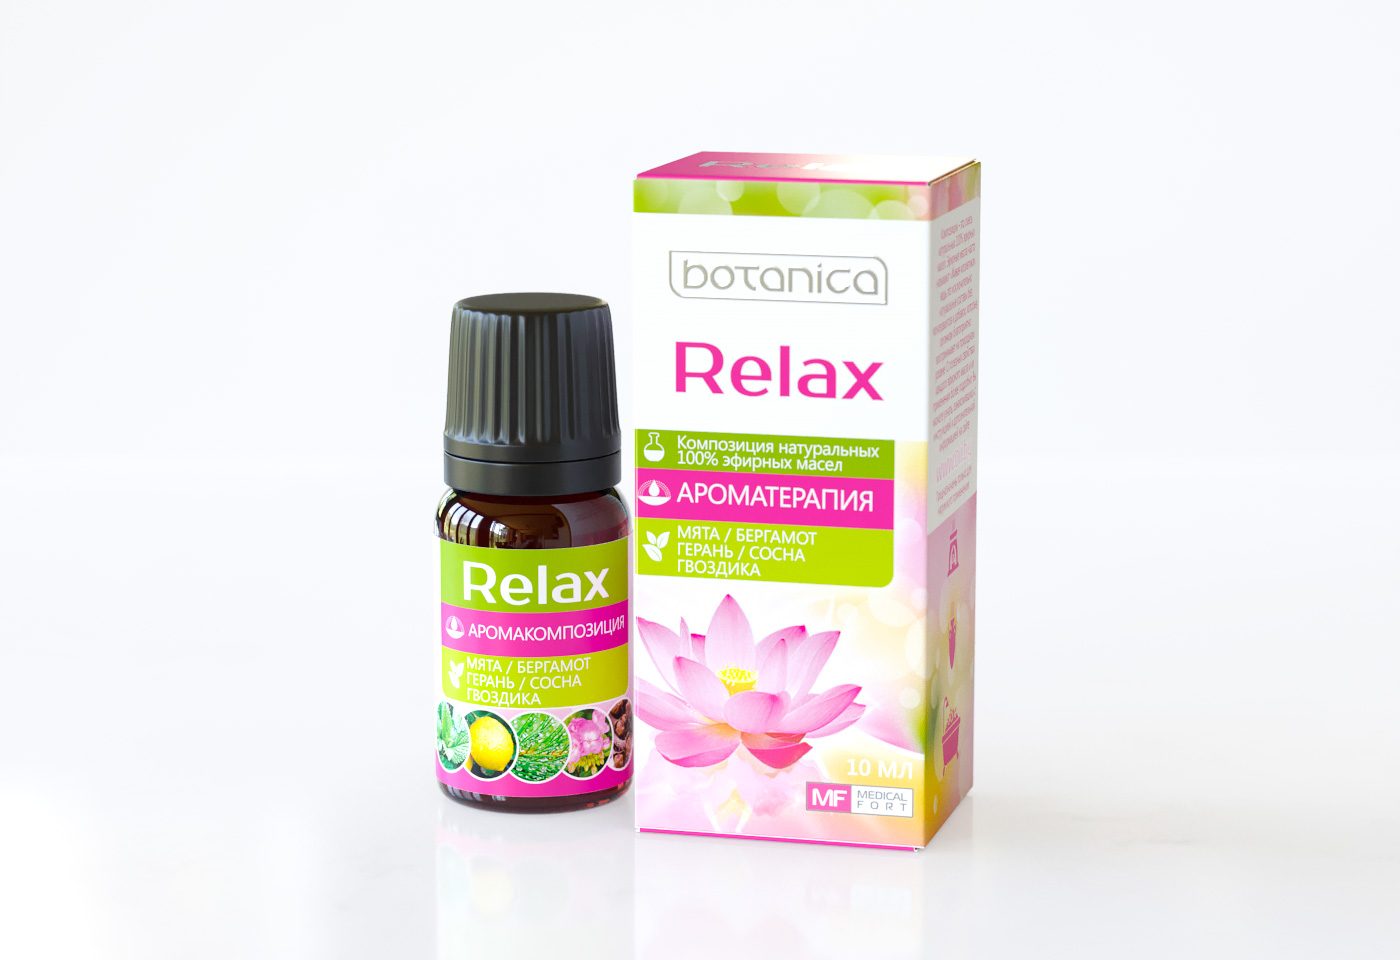 Упаковка эфирное масло Botanica "Relax"